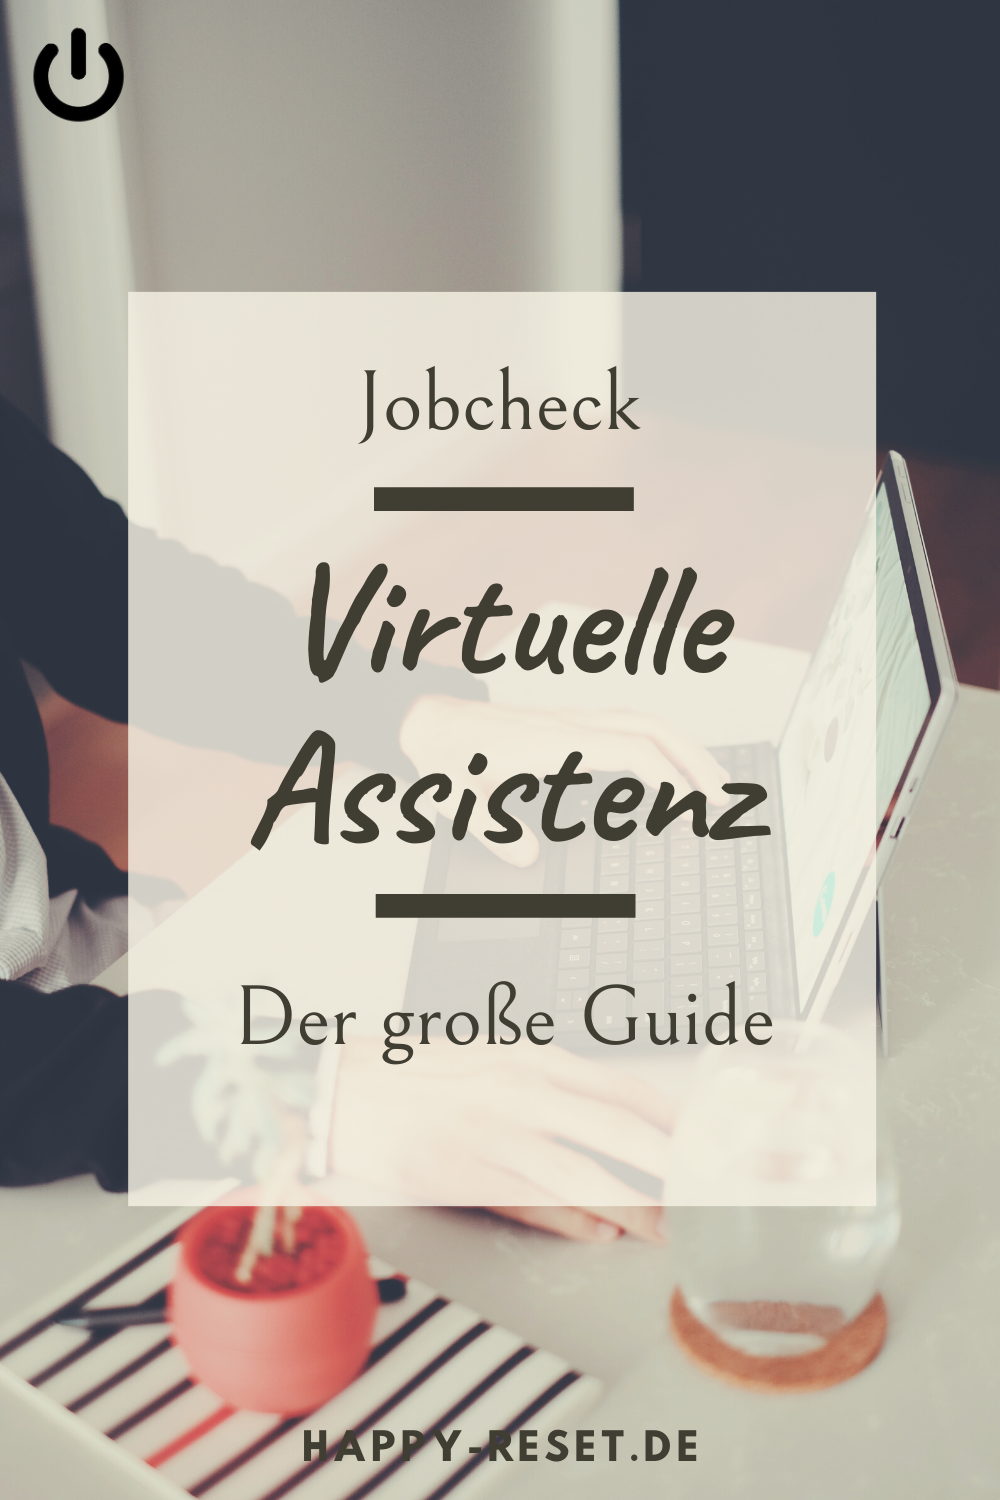 Jobcheck - Virtuelle Assistenz